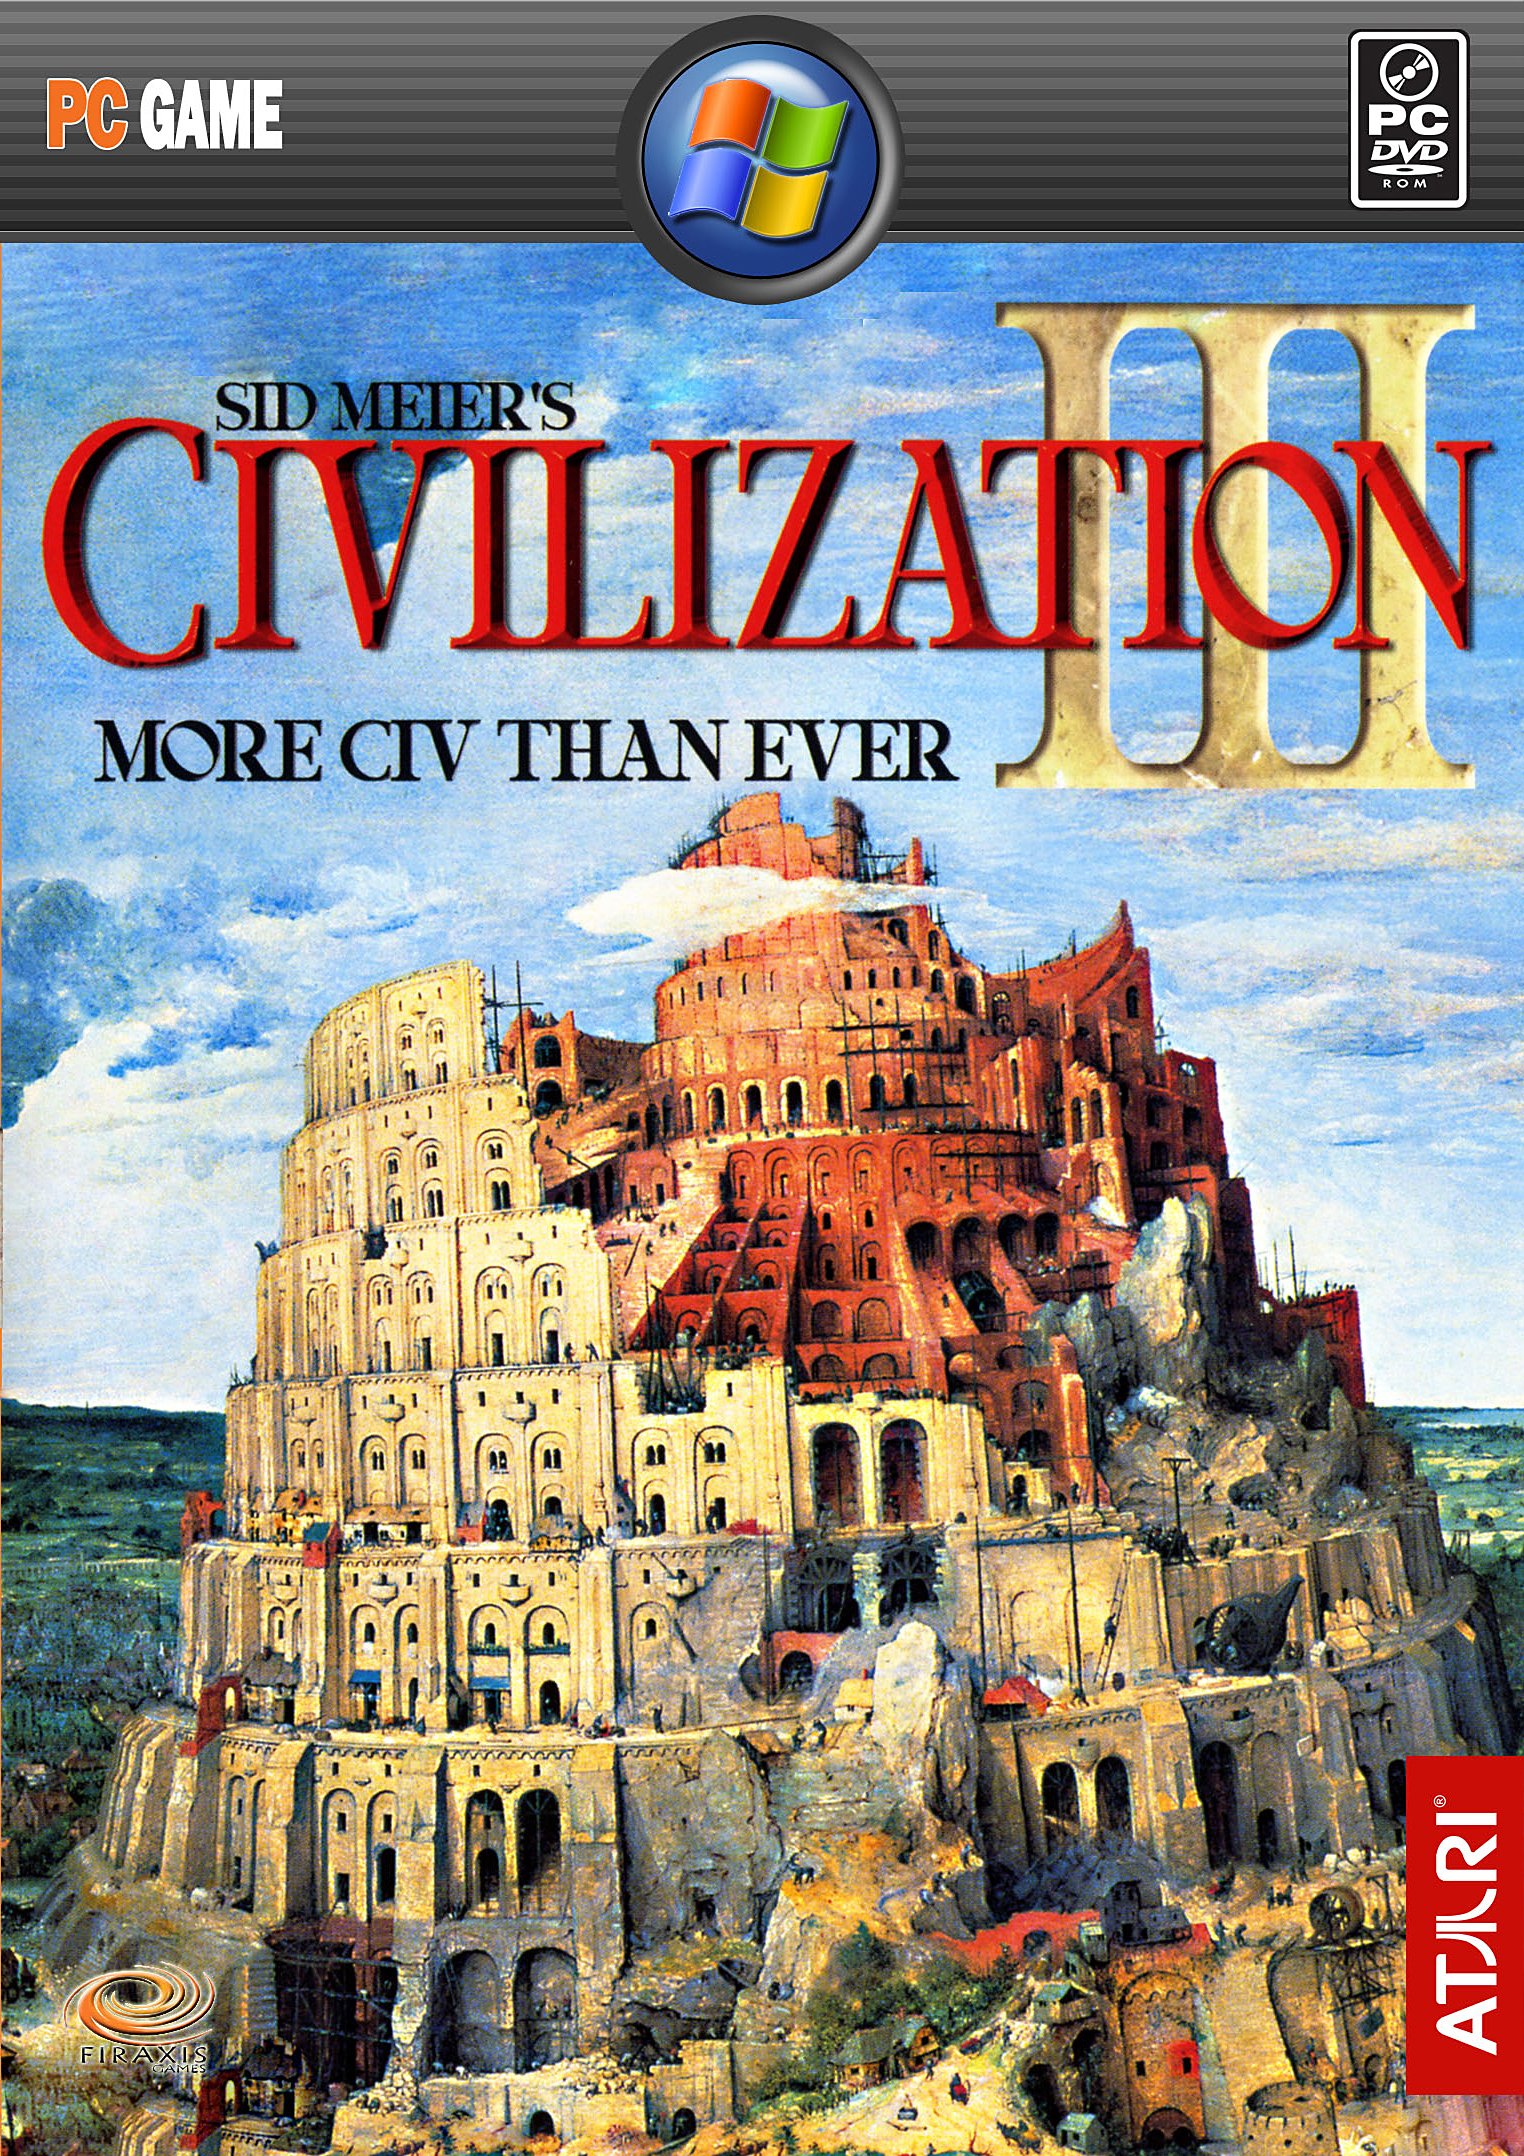 Sid Meier’s Civilization III for windows download free